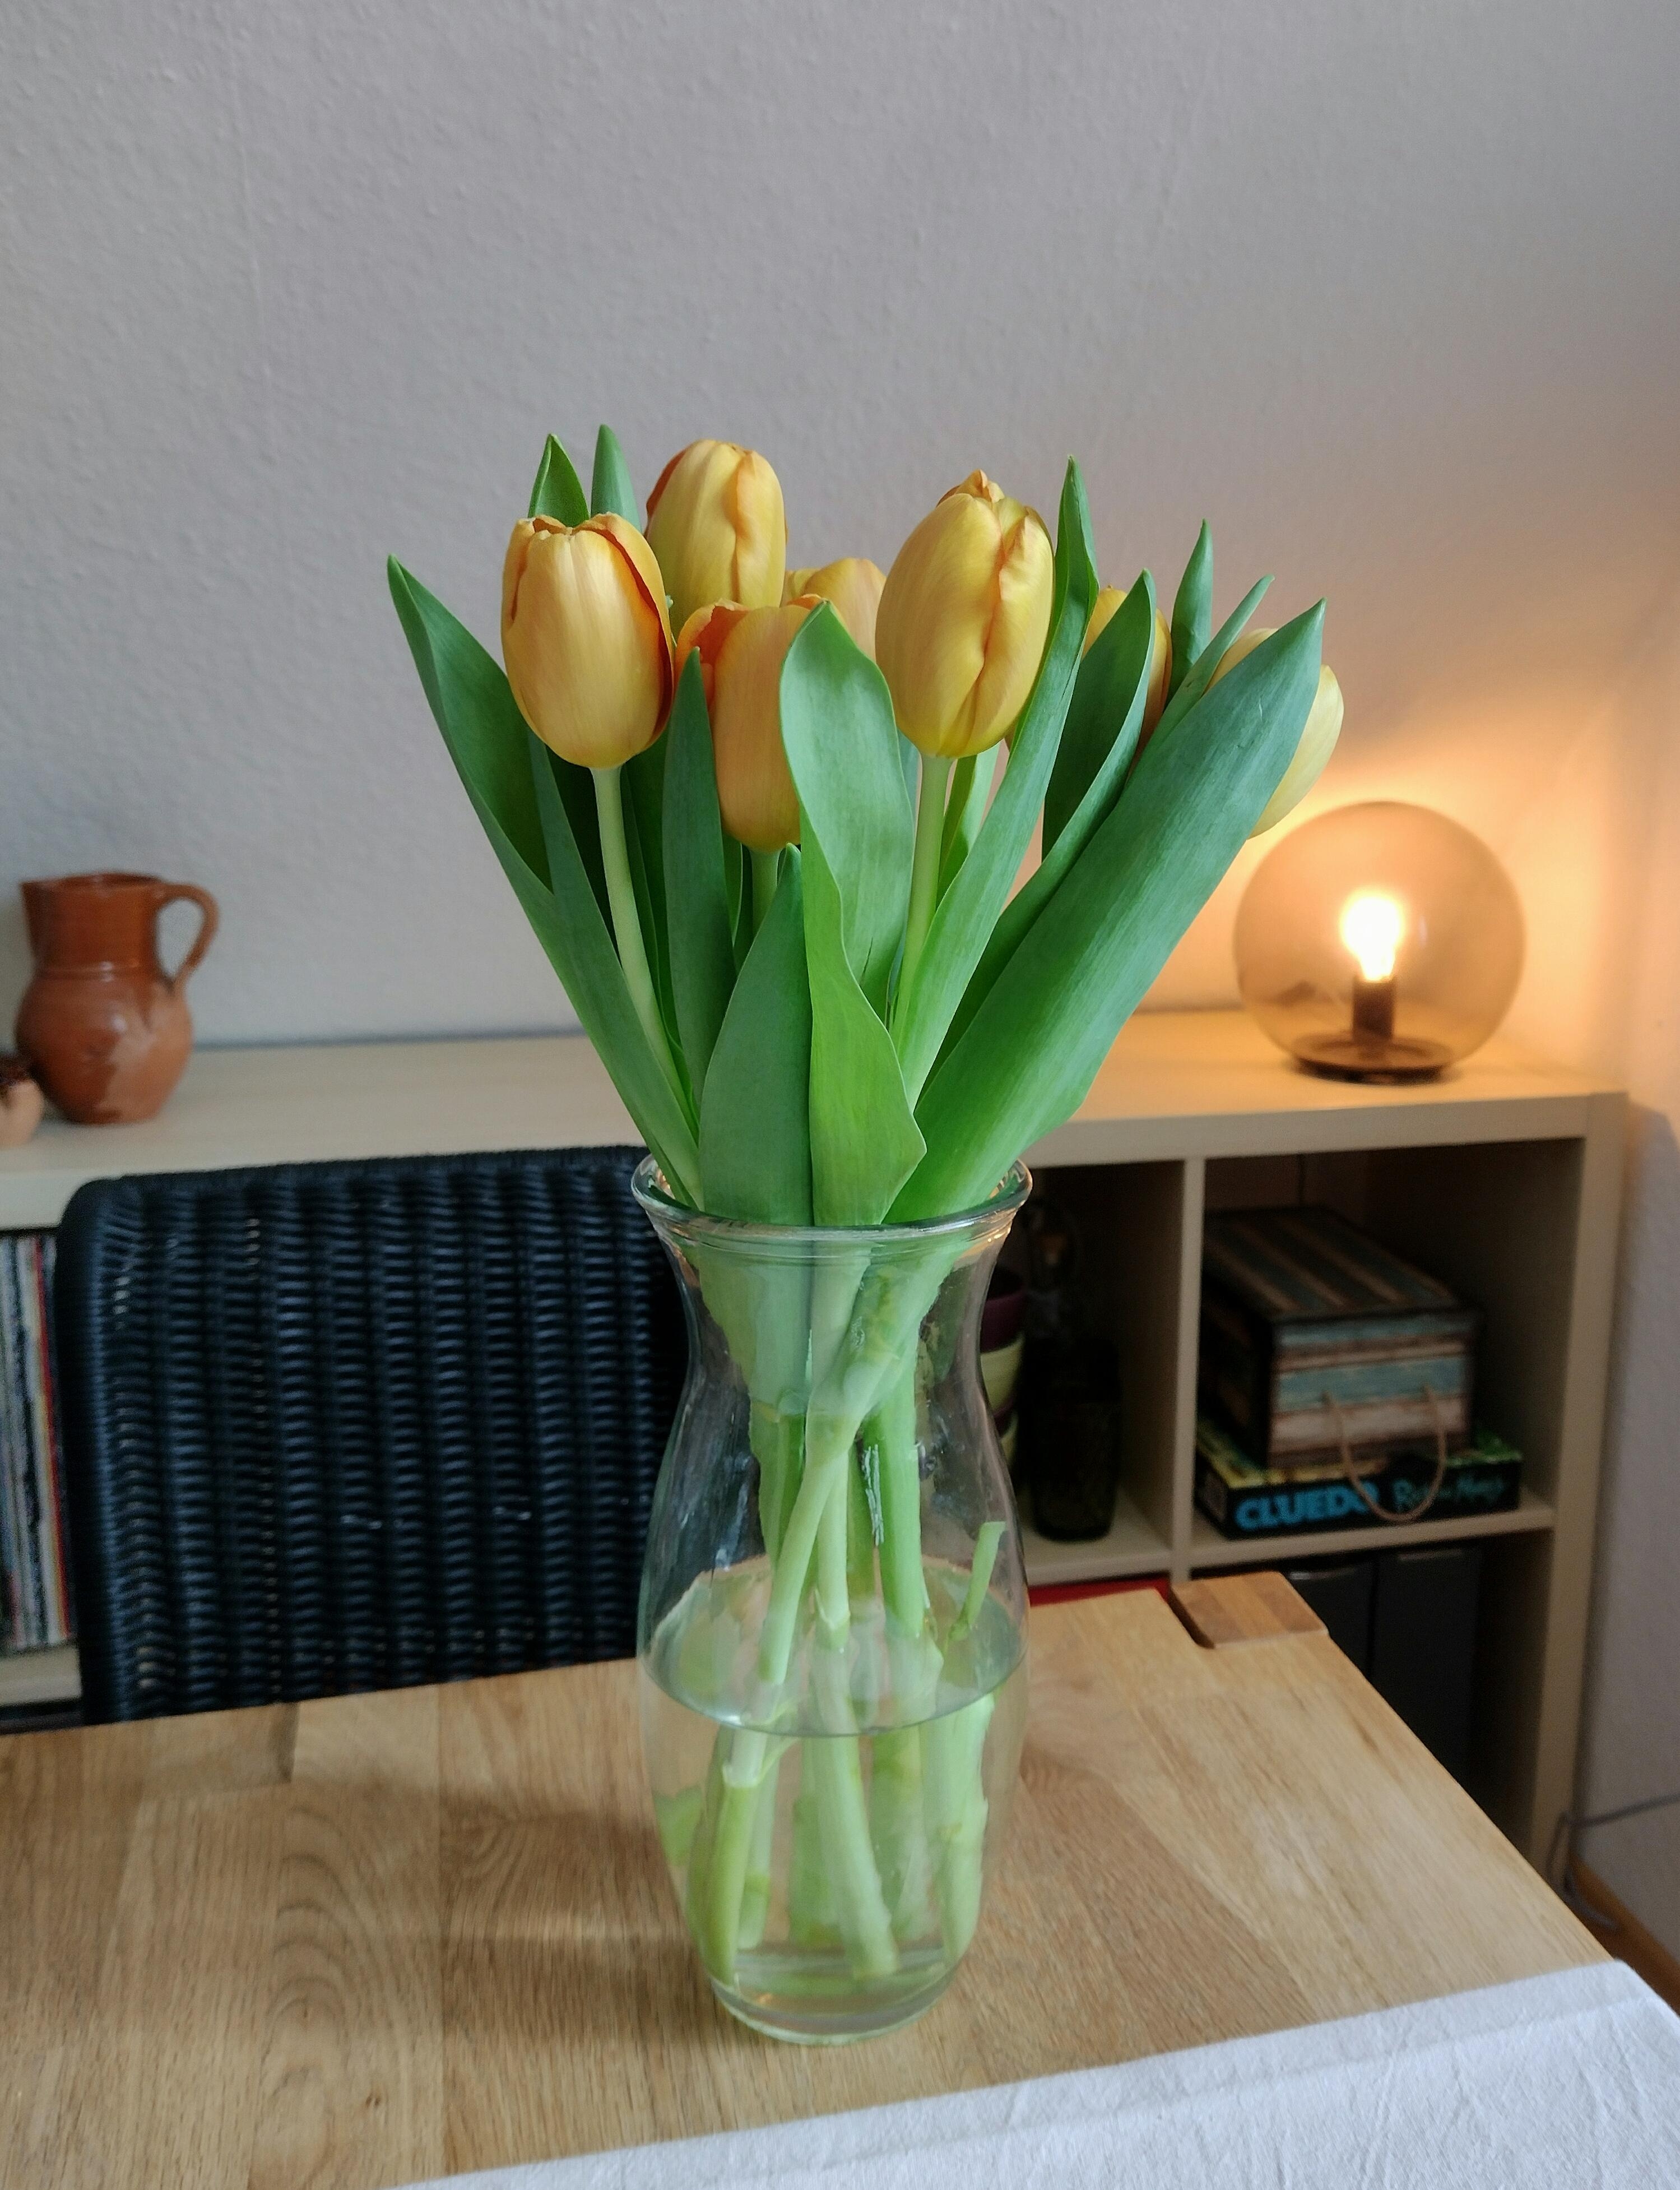 💛🧡💛
#tulpen #tulpenliebe #frischeblumen #glasvase #kugellampe #dachschräge #blumenliebe 